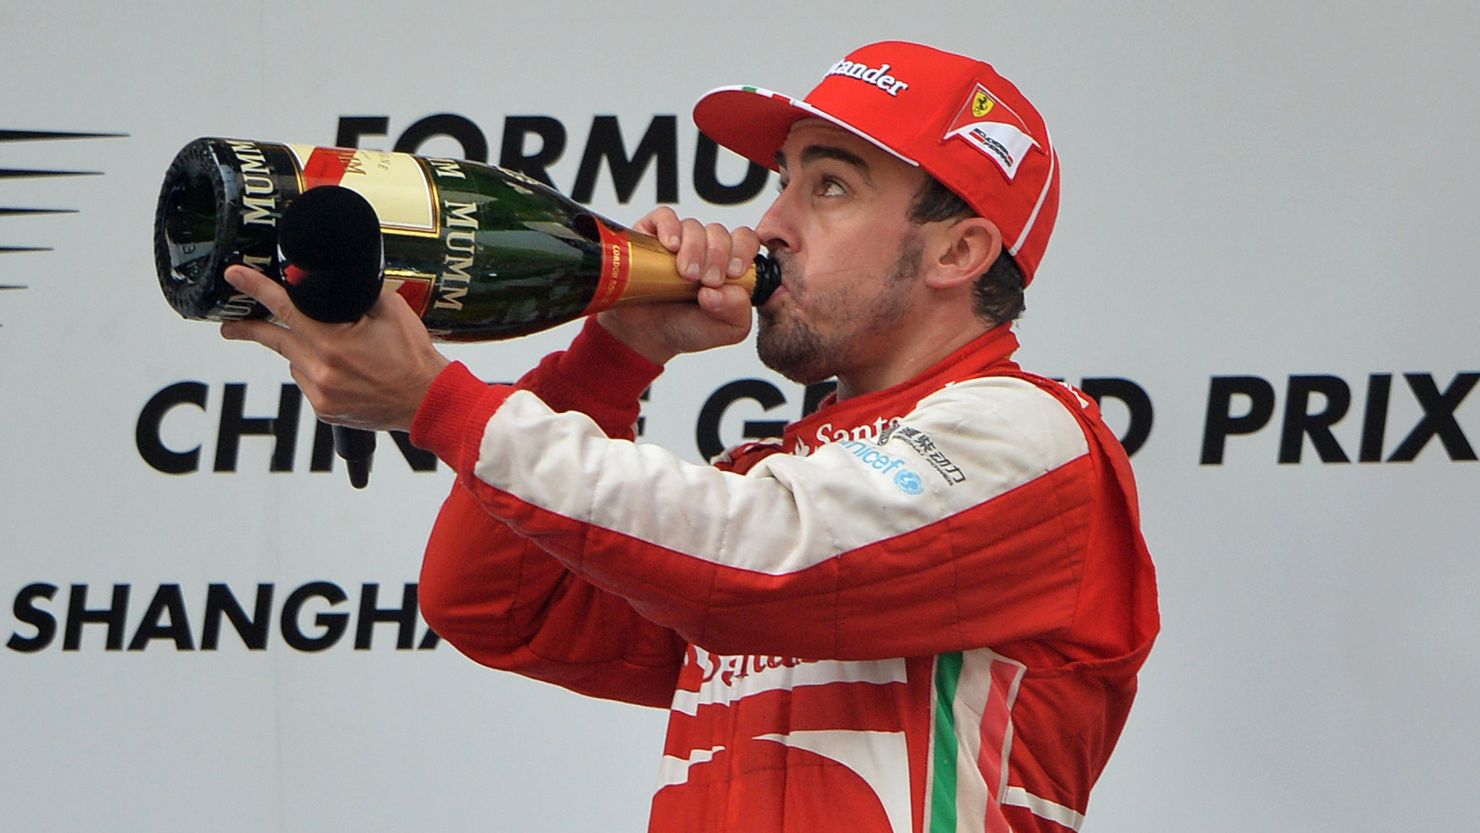 Fernando Alonso celebrates after winning the Chinese Grand Prix Sunday.